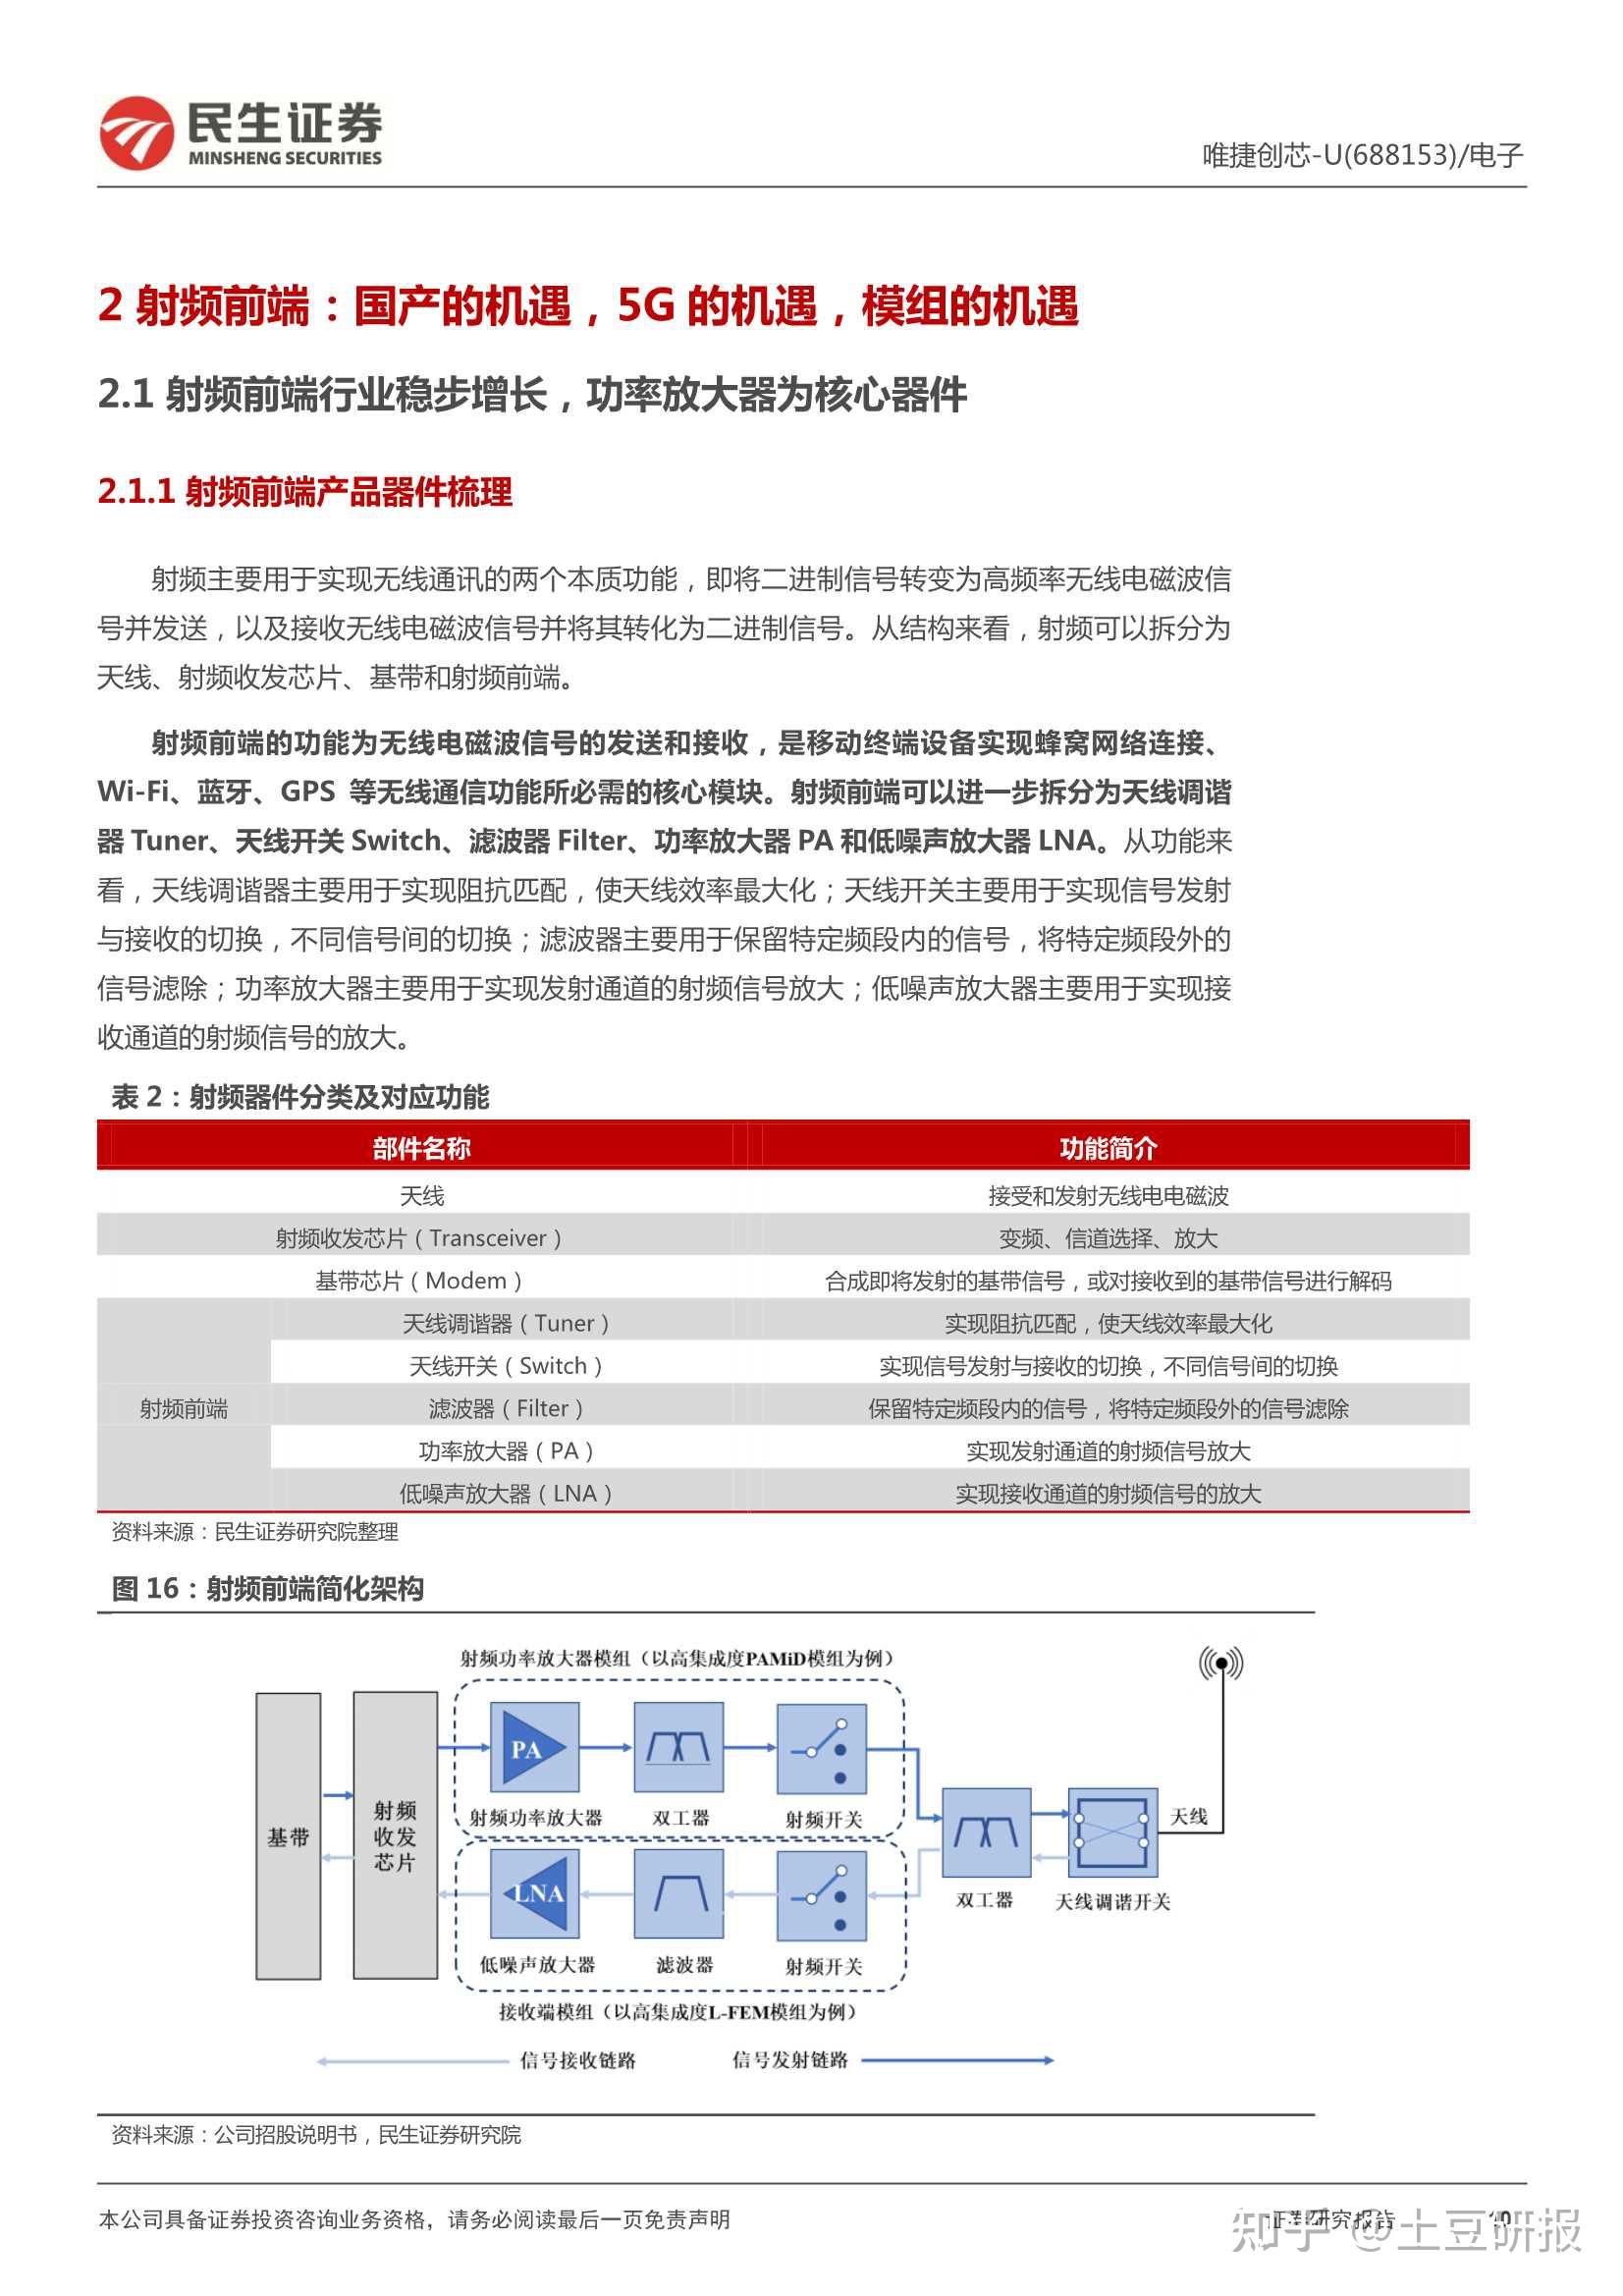 唯捷创芯于深圳新设子公司，经营范围含集成电路设计_显示_赵理_人民币